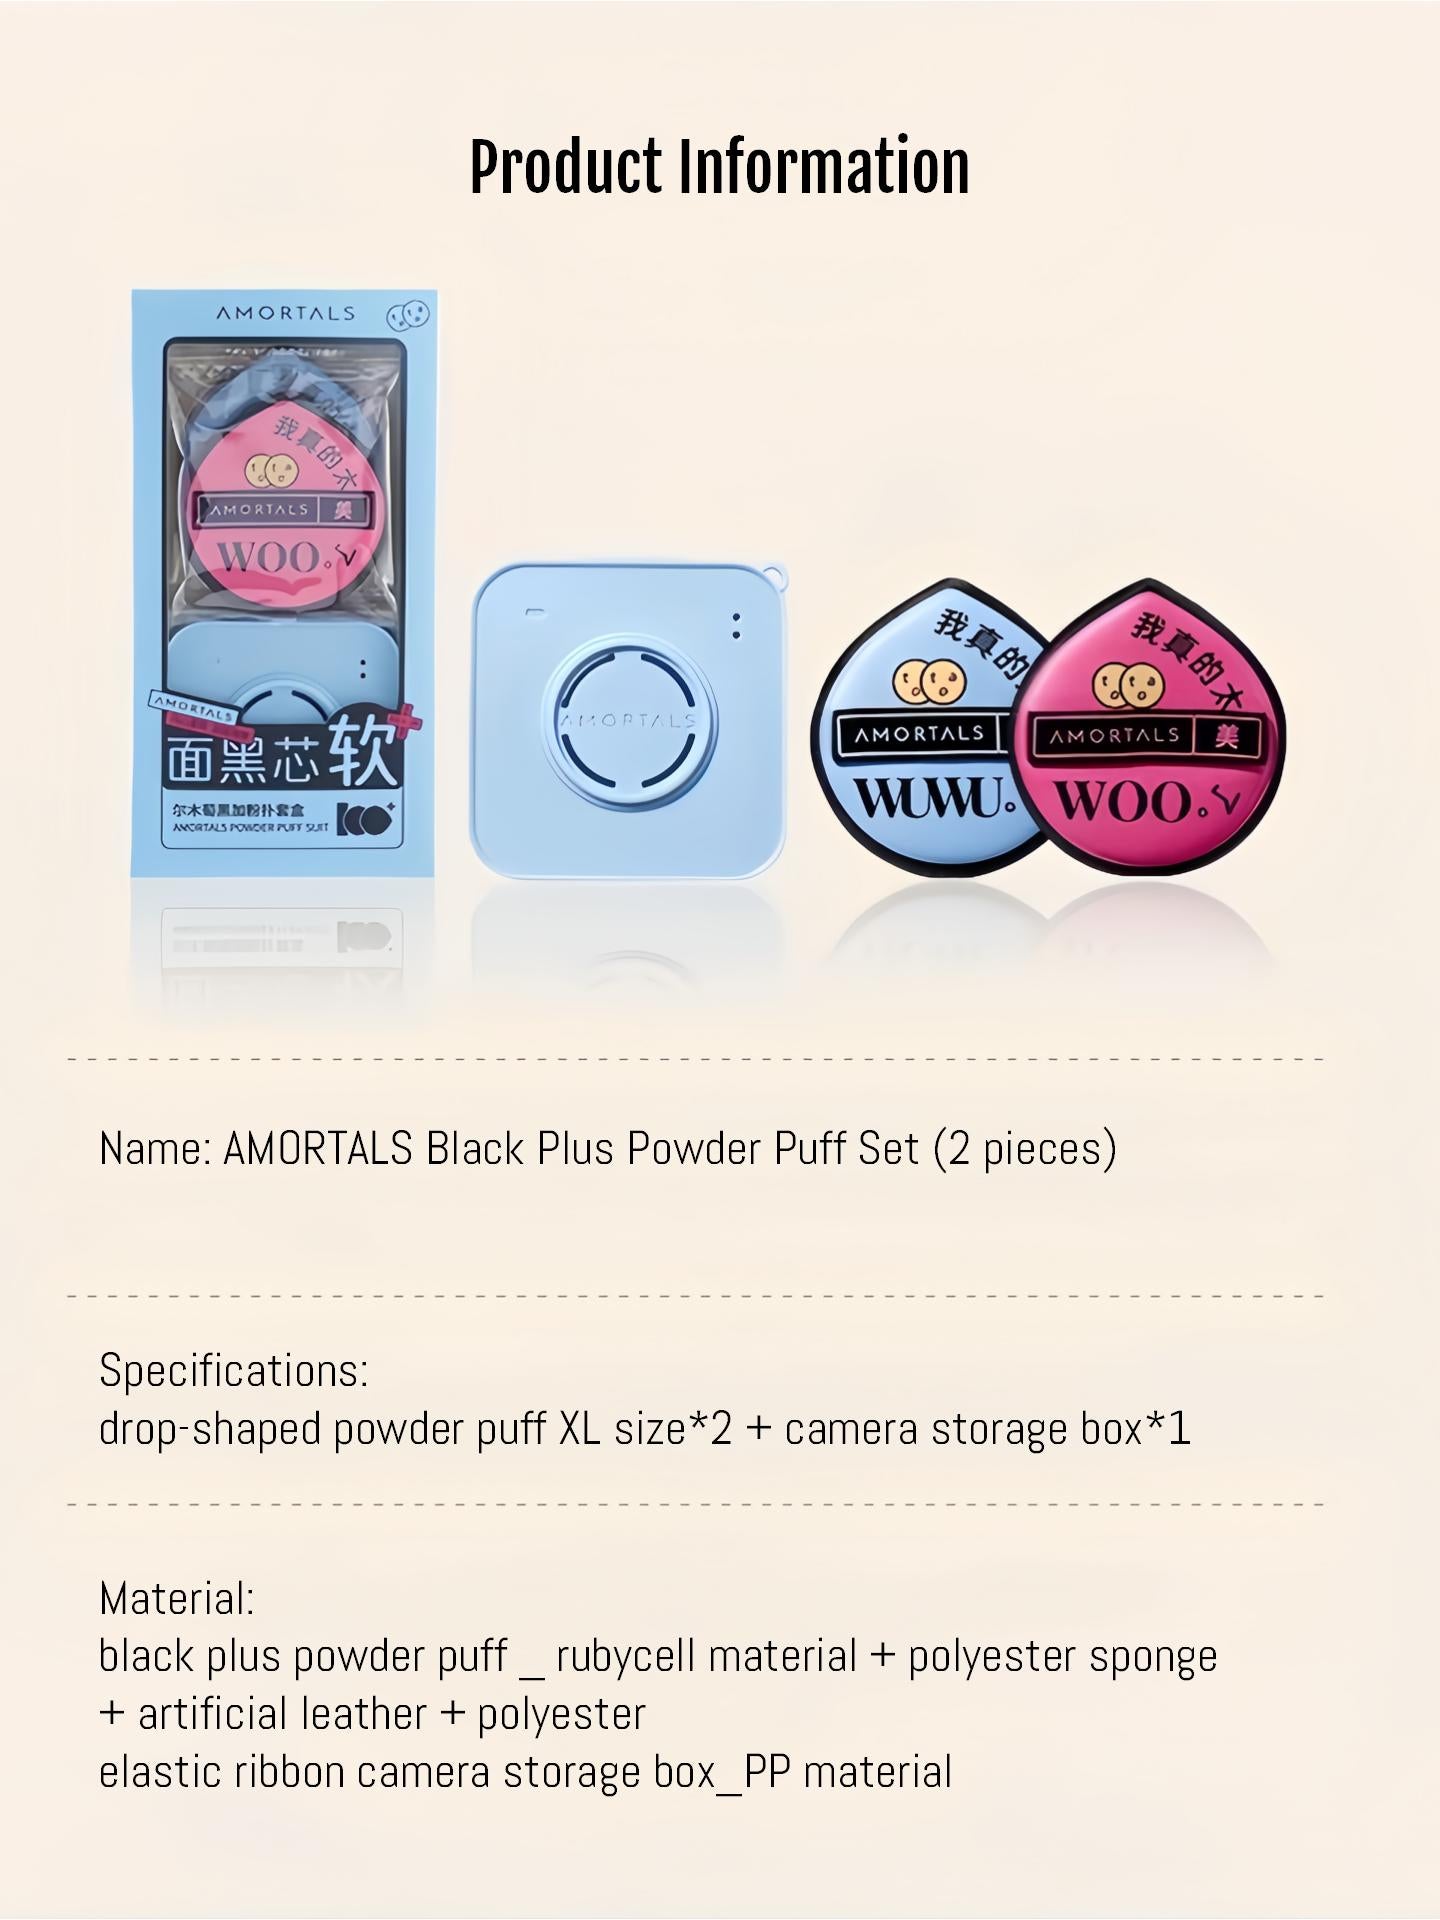 Amortals Black Plus Powder Puff Set AMT016